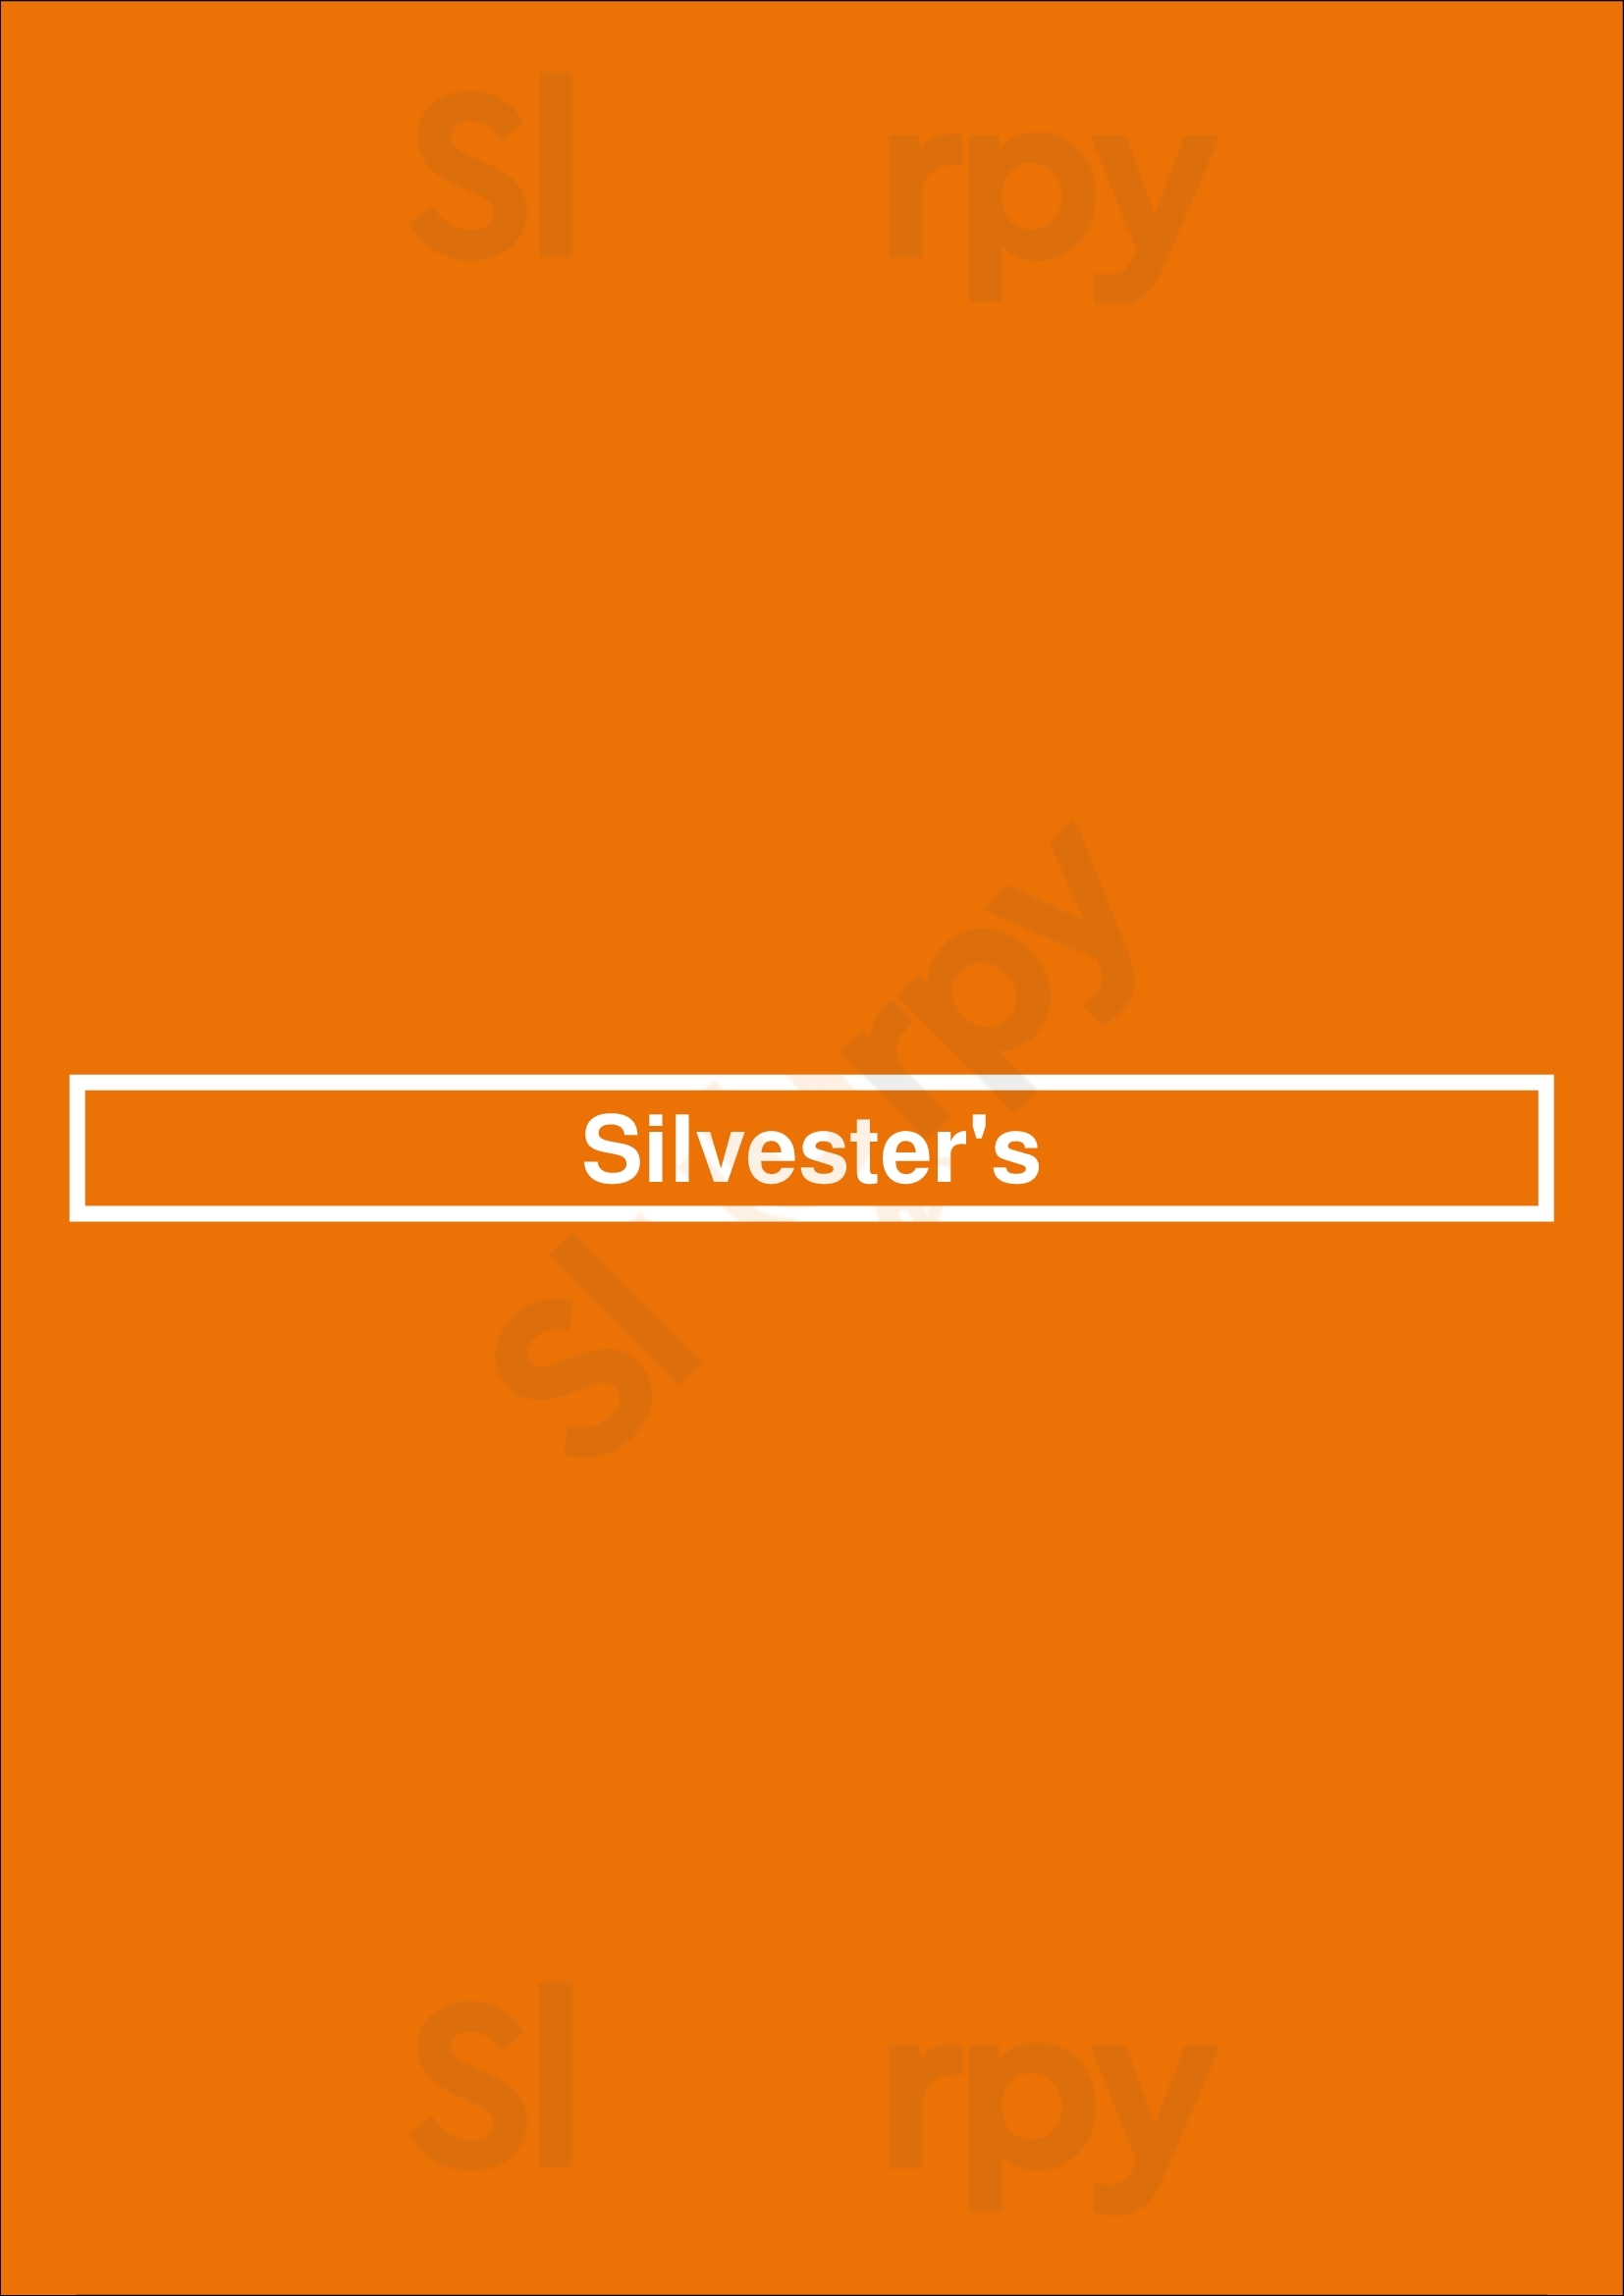 Silvester's Sydney Menu - 1